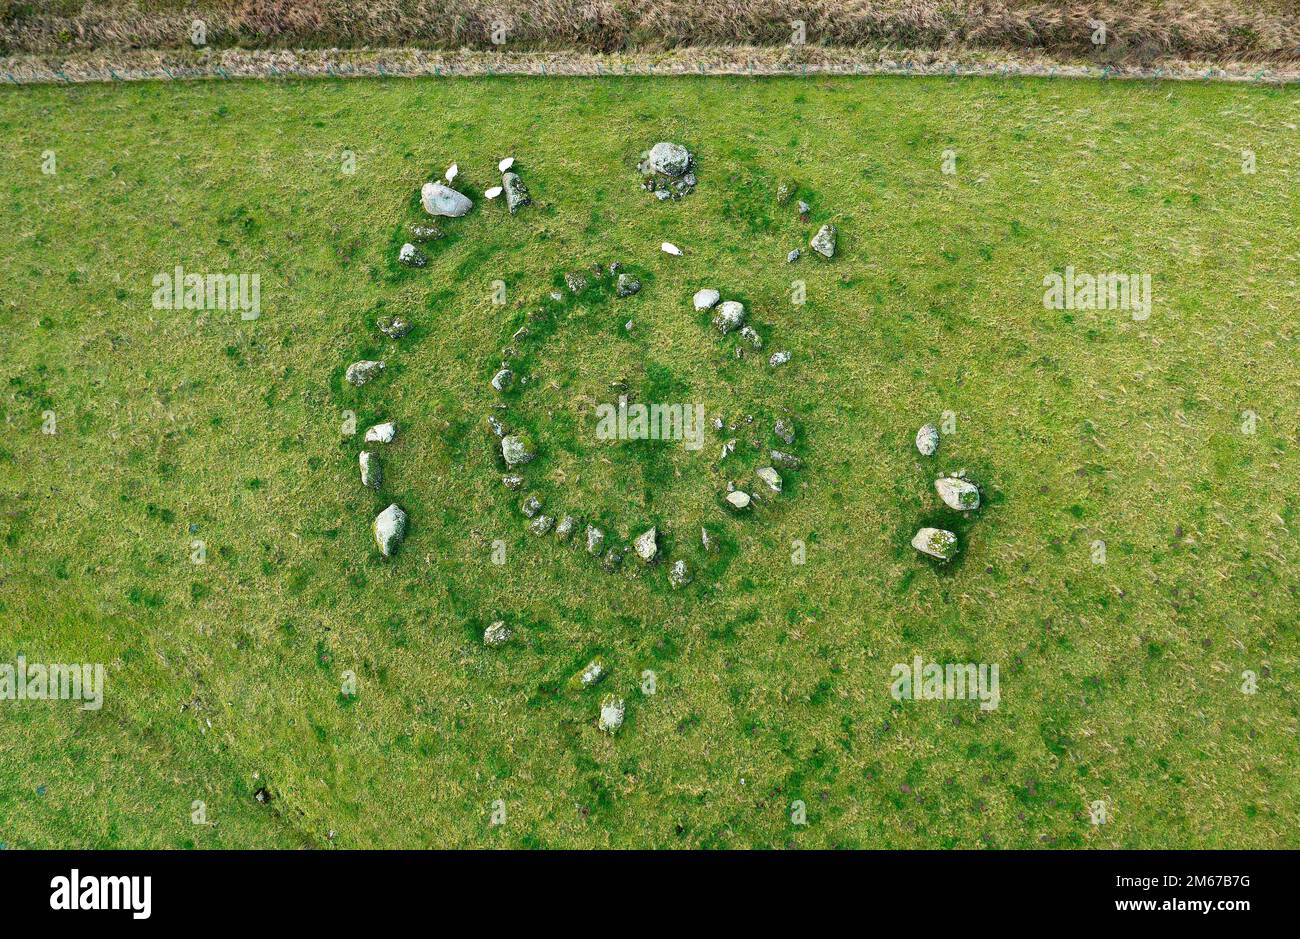 Gunnerkeld cercle concentrique en pierre près de Shap, Cumbria. Site préhistorique en pierre de granit. Le cercle intérieur est un bord de pierre d'origine et de terre cairn Banque D'Images